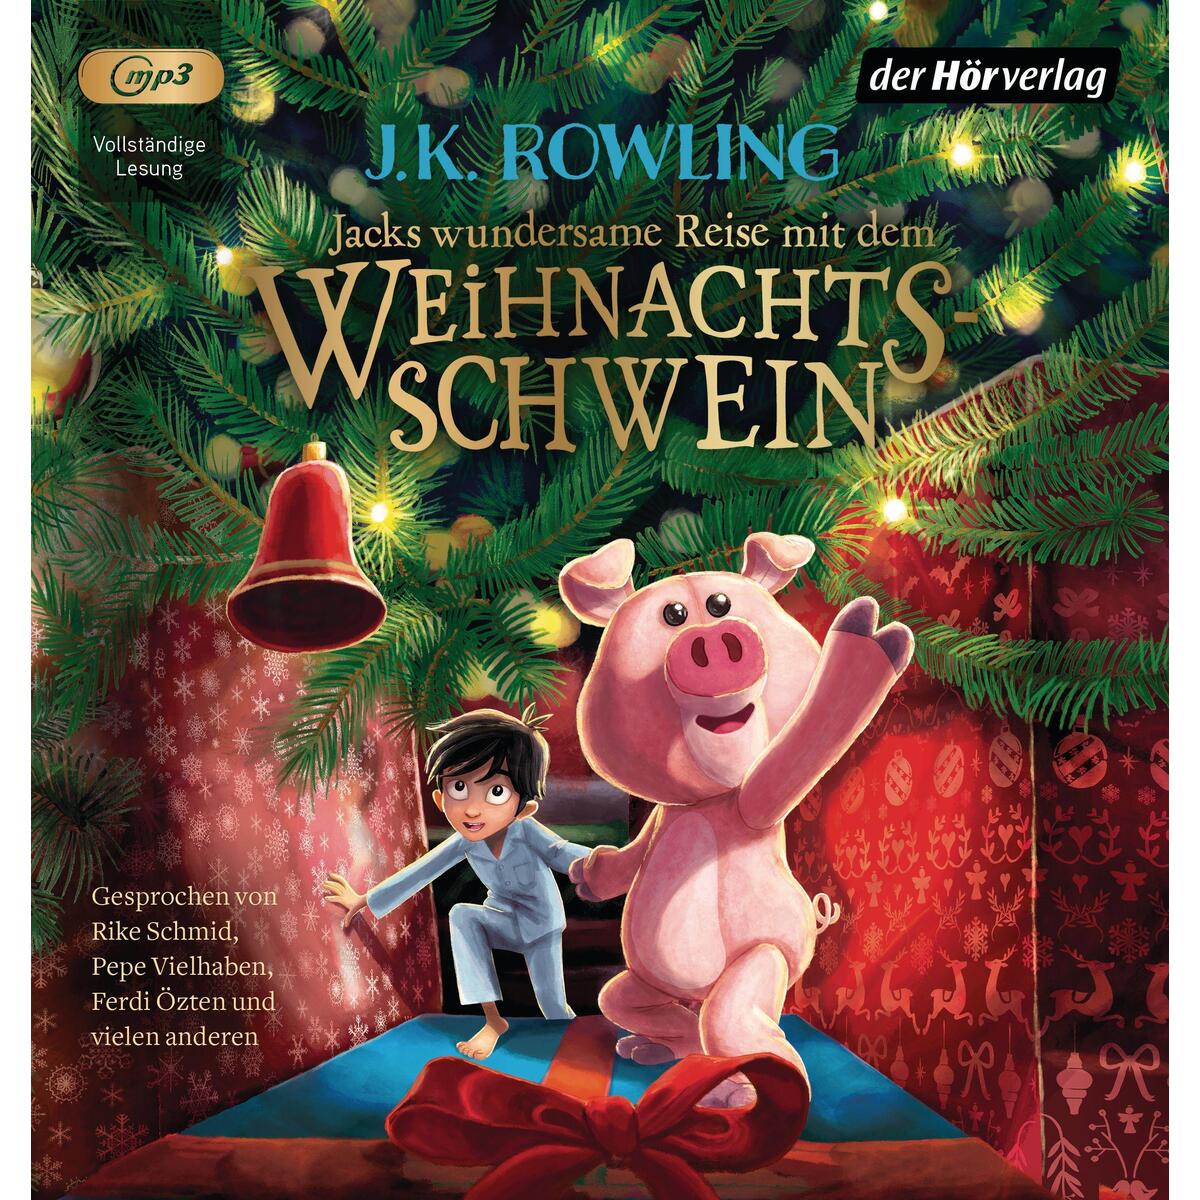 Jacks wundersame Reise mit dem Weihnachtsschwein von Hoerverlag DHV Der